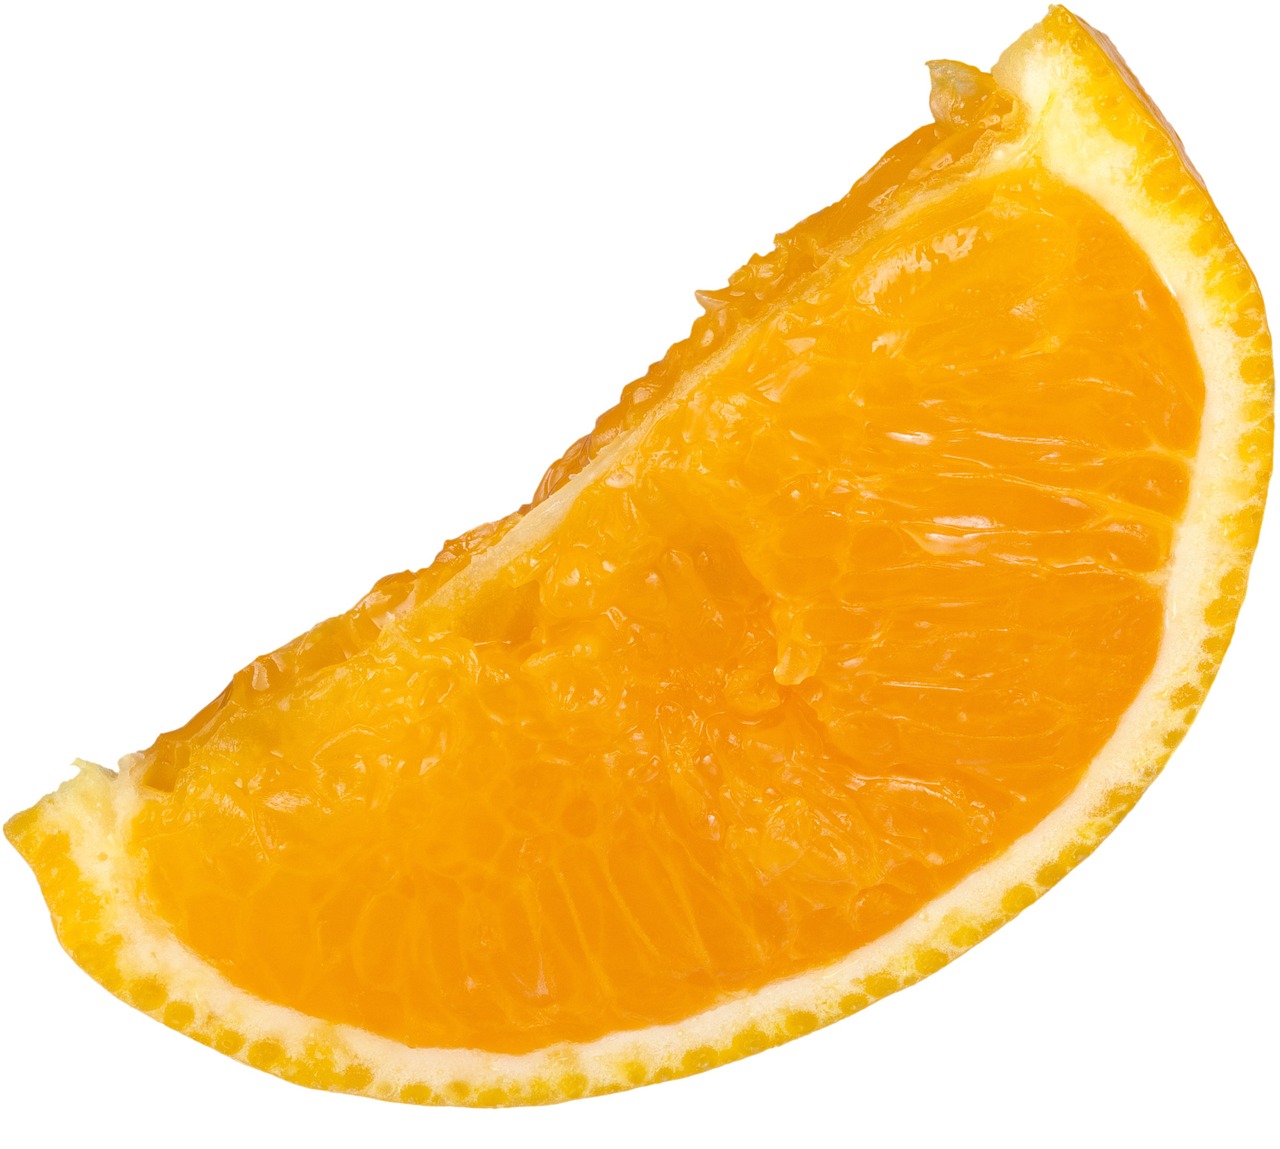 orange orange slice white background free photo